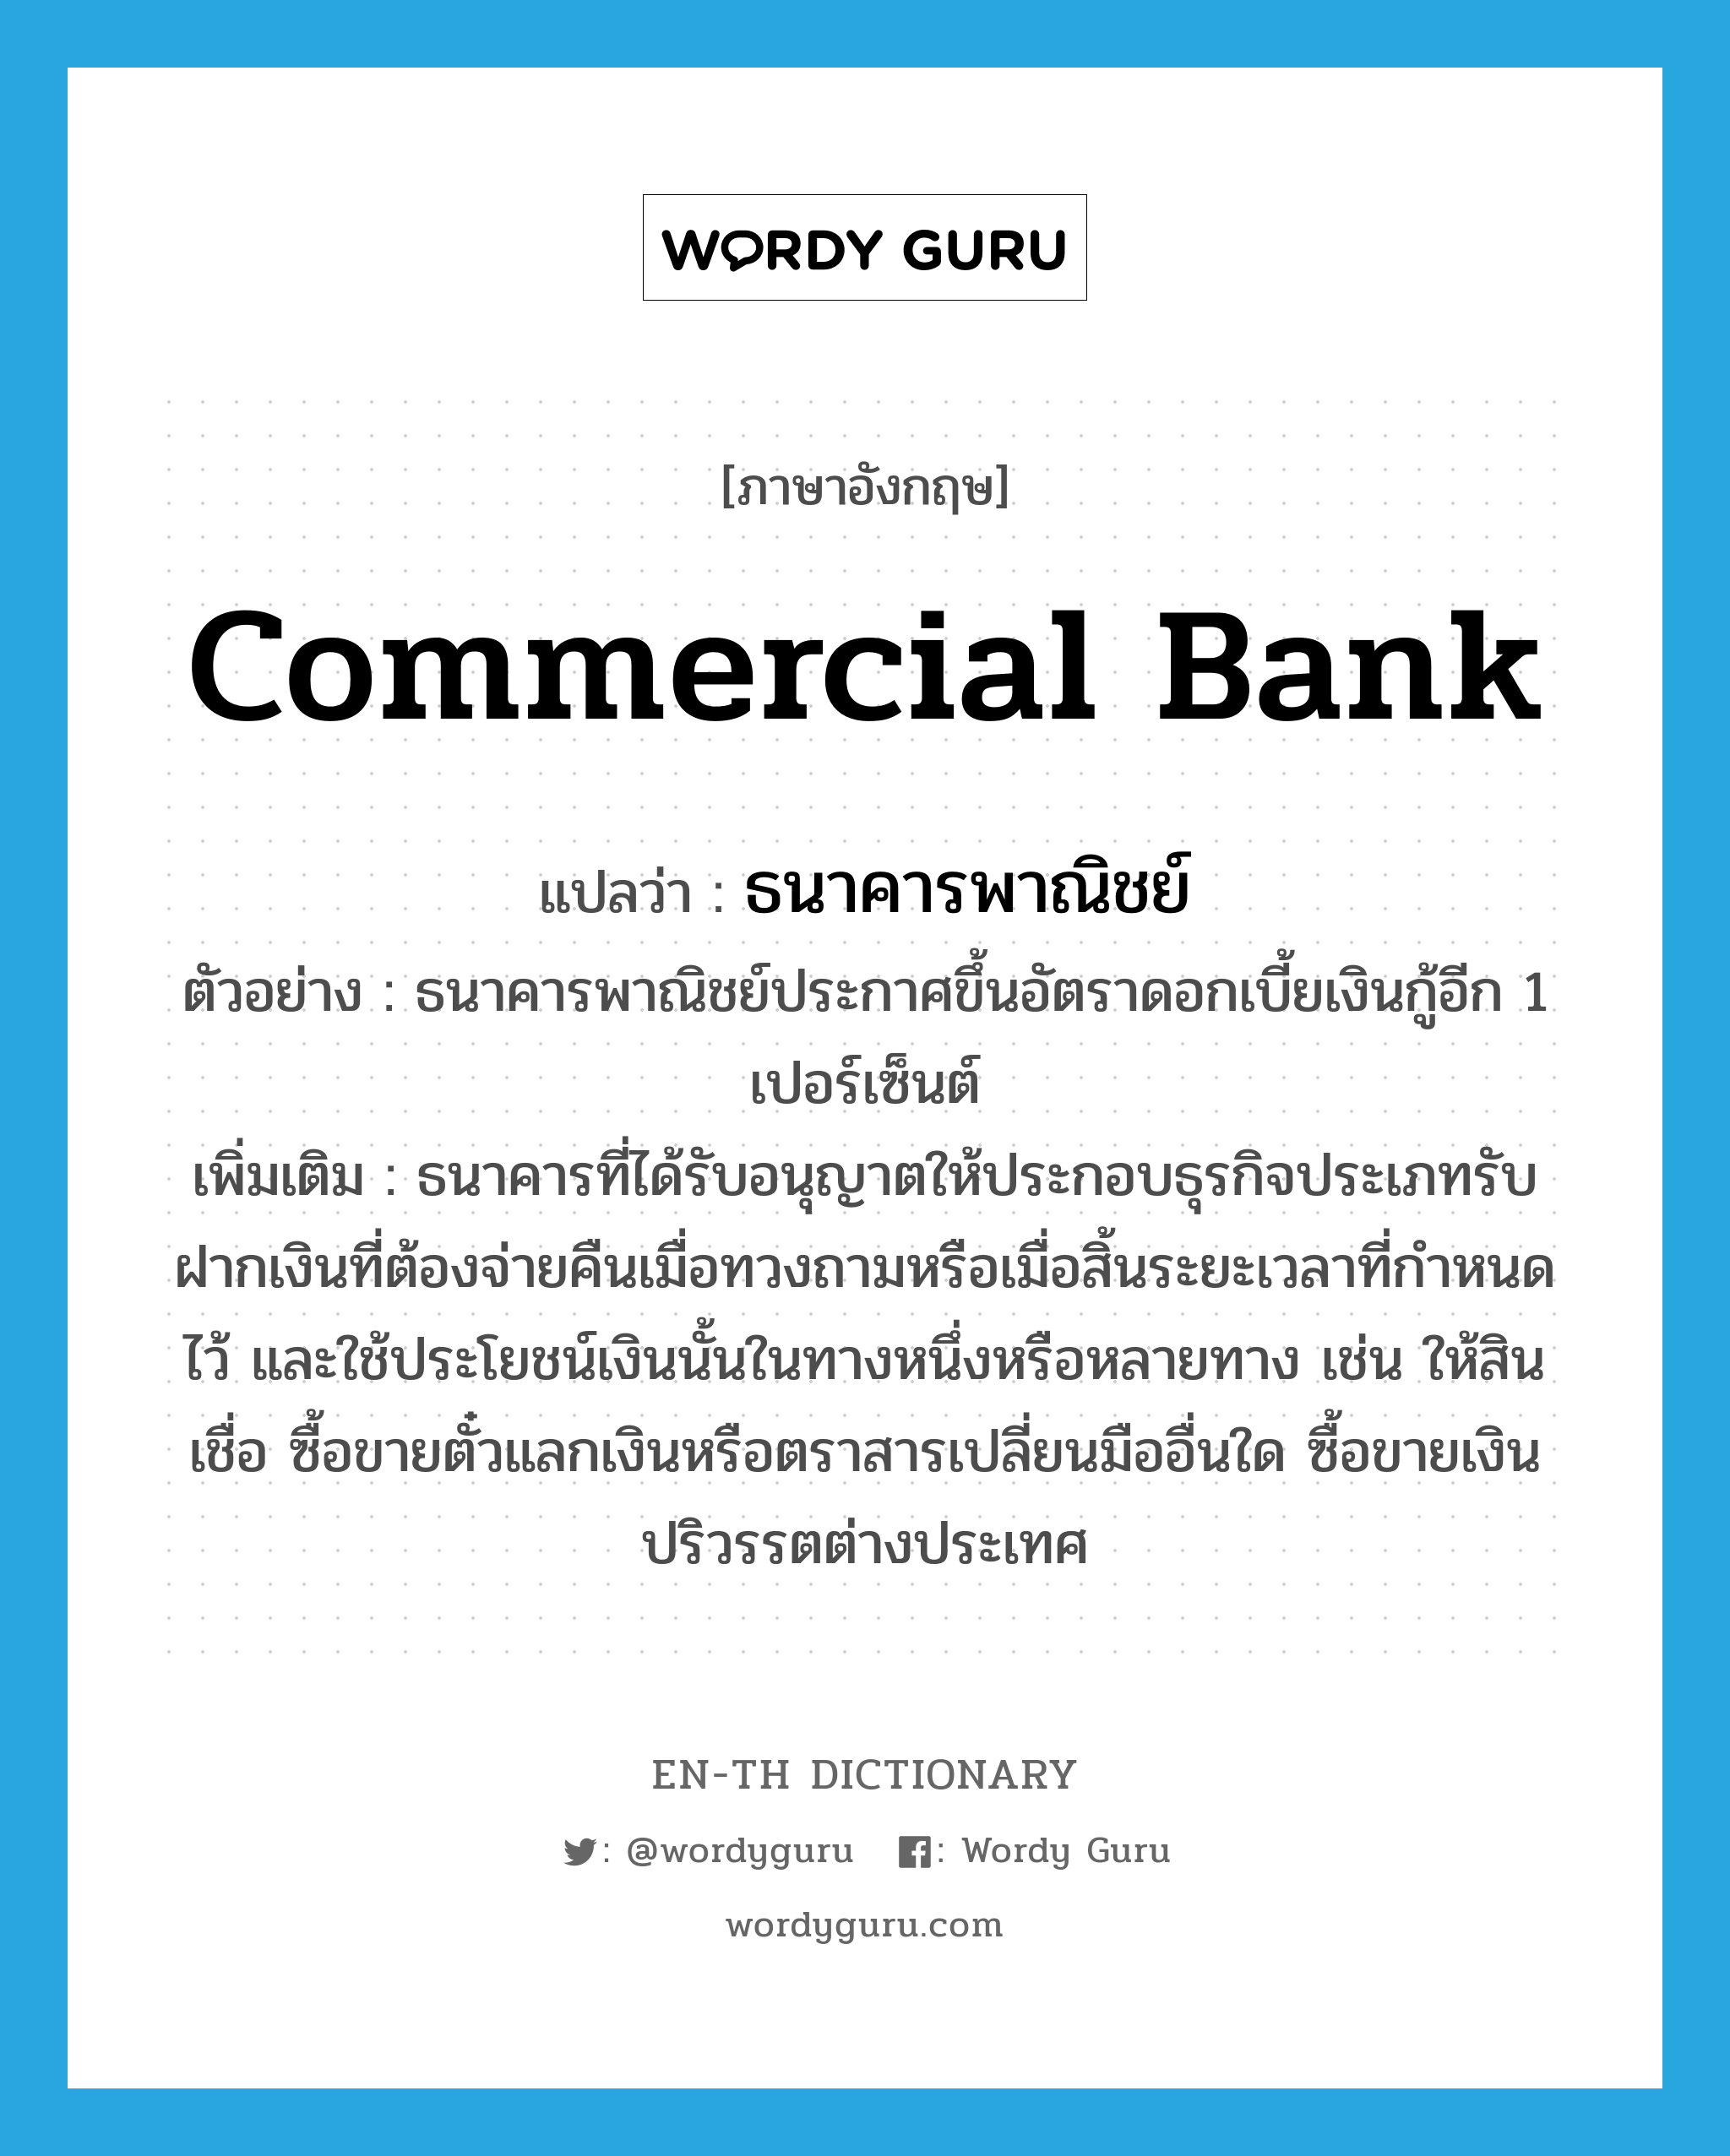 commercial bank แปลว่า?, คำศัพท์ภาษาอังกฤษ commercial bank แปลว่า ธนาคารพาณิชย์ ประเภท N ตัวอย่าง ธนาคารพาณิชย์ประกาศขึ้นอัตราดอกเบี้ยเงินกู้อีก 1 เปอร์เซ็นต์ เพิ่มเติม ธนาคารที่ได้รับอนุญาตให้ประกอบธุรกิจประเภทรับฝากเงินที่ต้องจ่ายคืนเมื่อทวงถามหรือเมื่อสิ้นระยะเวลาที่กำหนดไว้ และใช้ประโยชน์เงินนั้นในทางหนึ่งหรือหลายทาง เช่น ให้สินเชื่อ ซื้อขายตั๋วแลกเงินหรือตราสารเปลี่ยนมืออื่นใด ซื้อขายเงินปริวรรตต่างประเทศ หมวด N